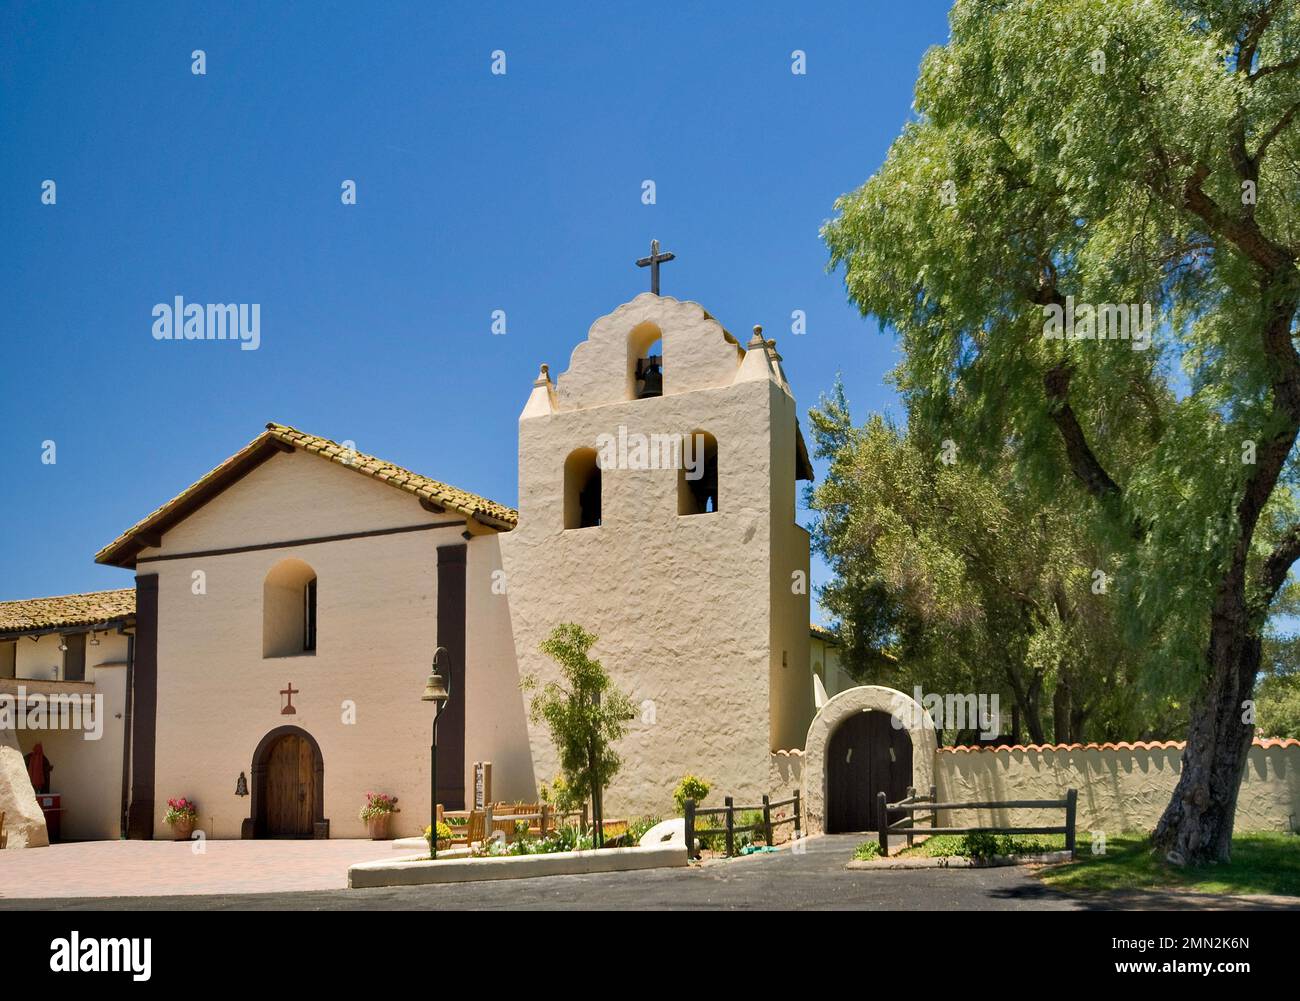 Façade de l'église et clocher à Mission Santa Ines près de Solvang, Californie, États-Unis Banque D'Images